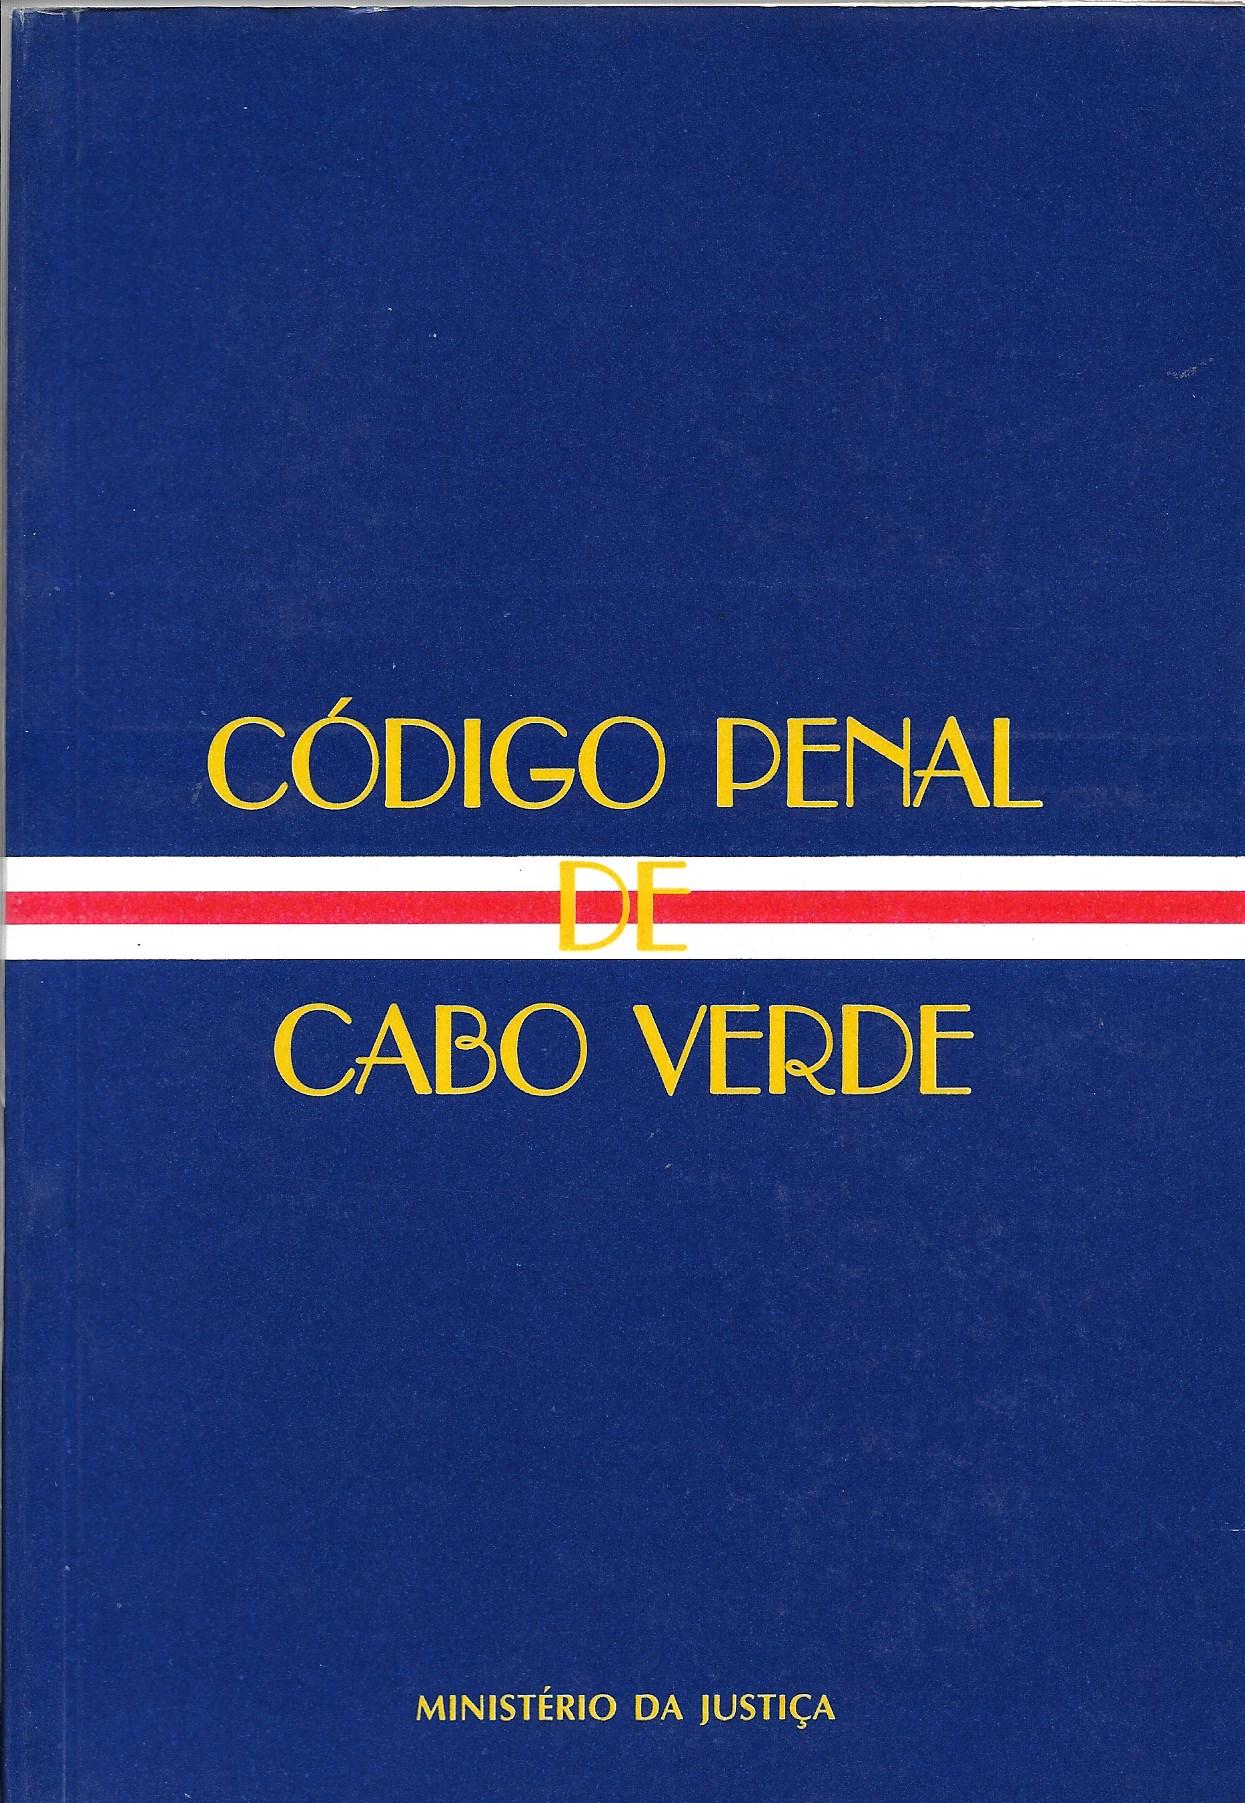 Código Penal de Cabo Verde